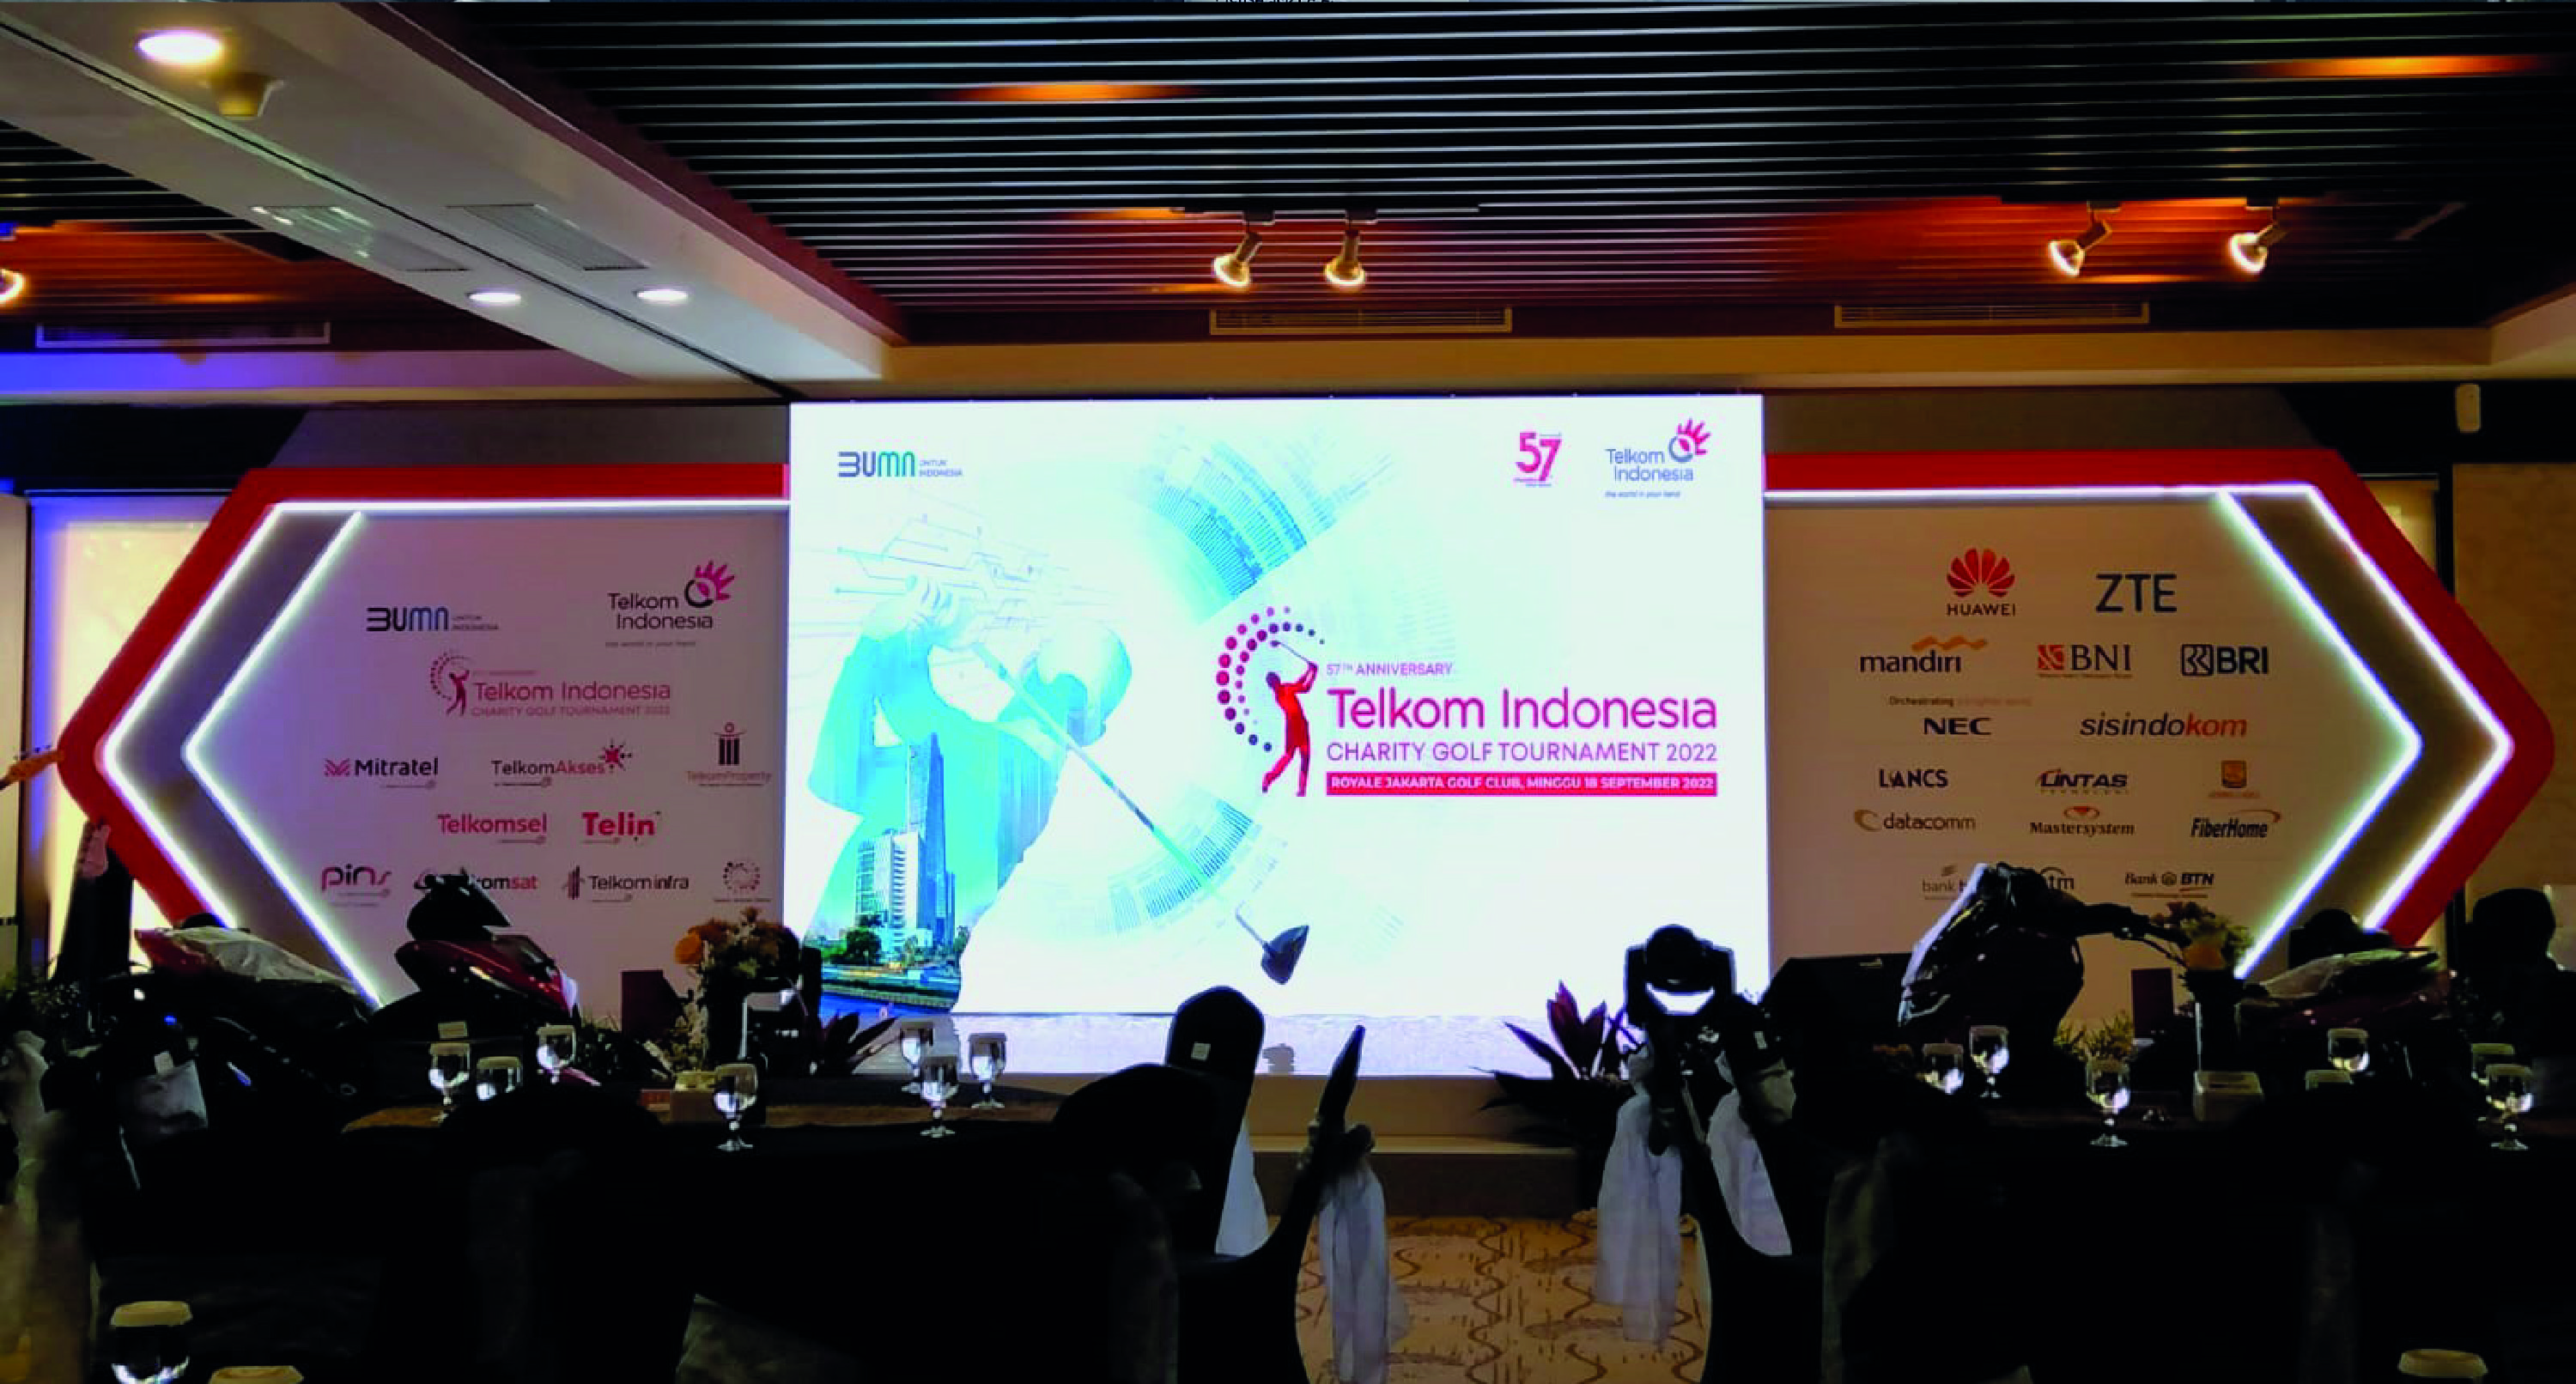 57th Anniversary Telkom Indonesia Charity Golf Tournament 2022